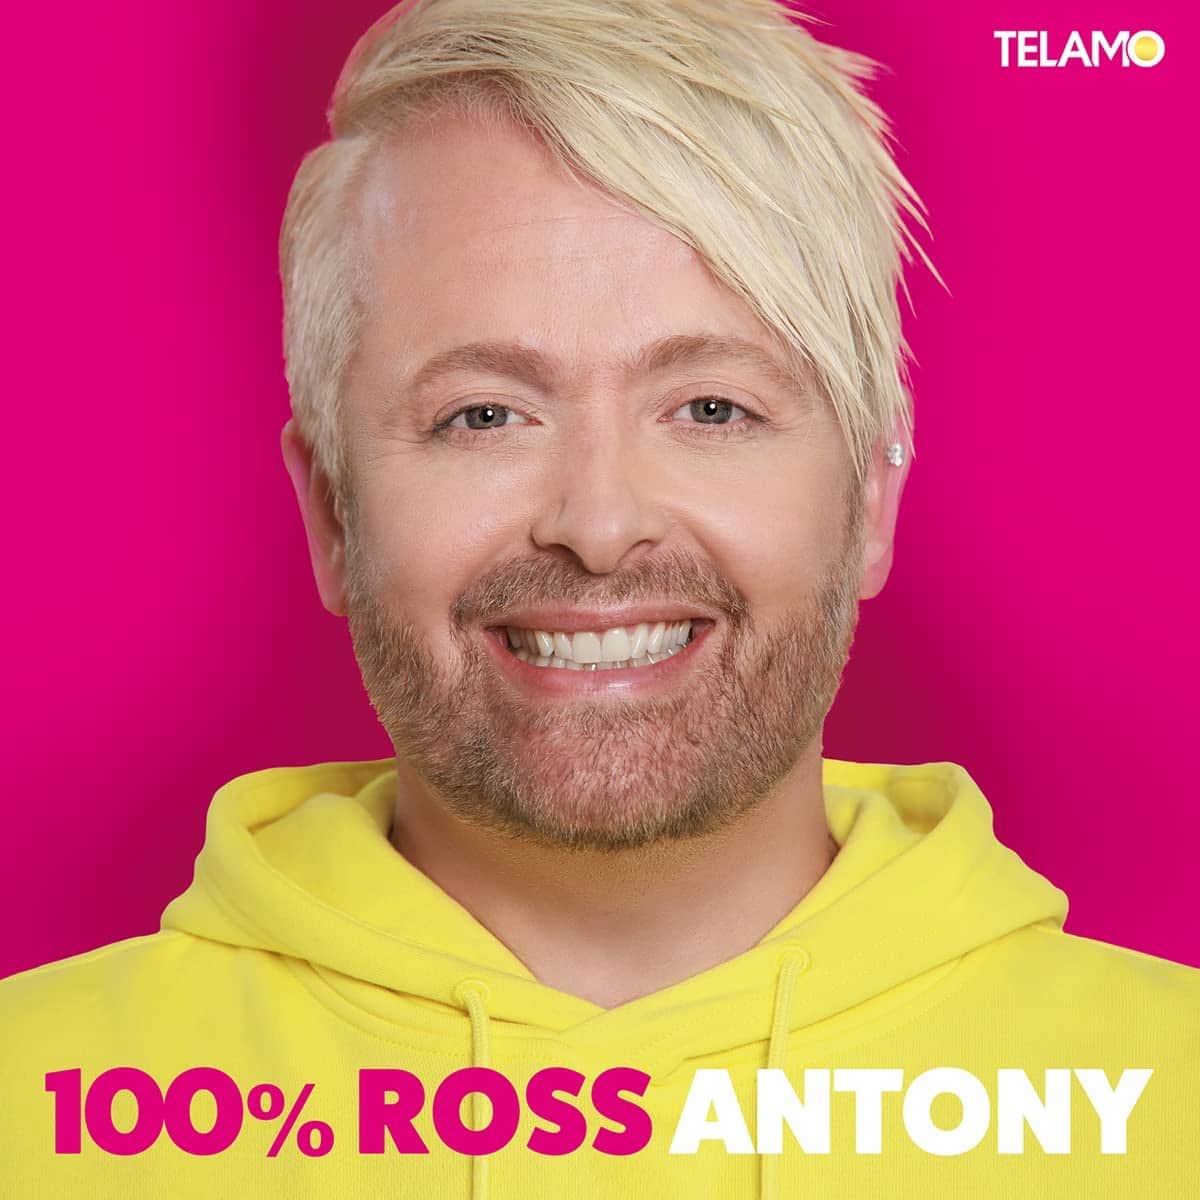 Ross Antony CD 2023 “100% Ross” - hier im Bild das CD-Cover mit dem Gesicht von Ross Antony in Großaufnahme